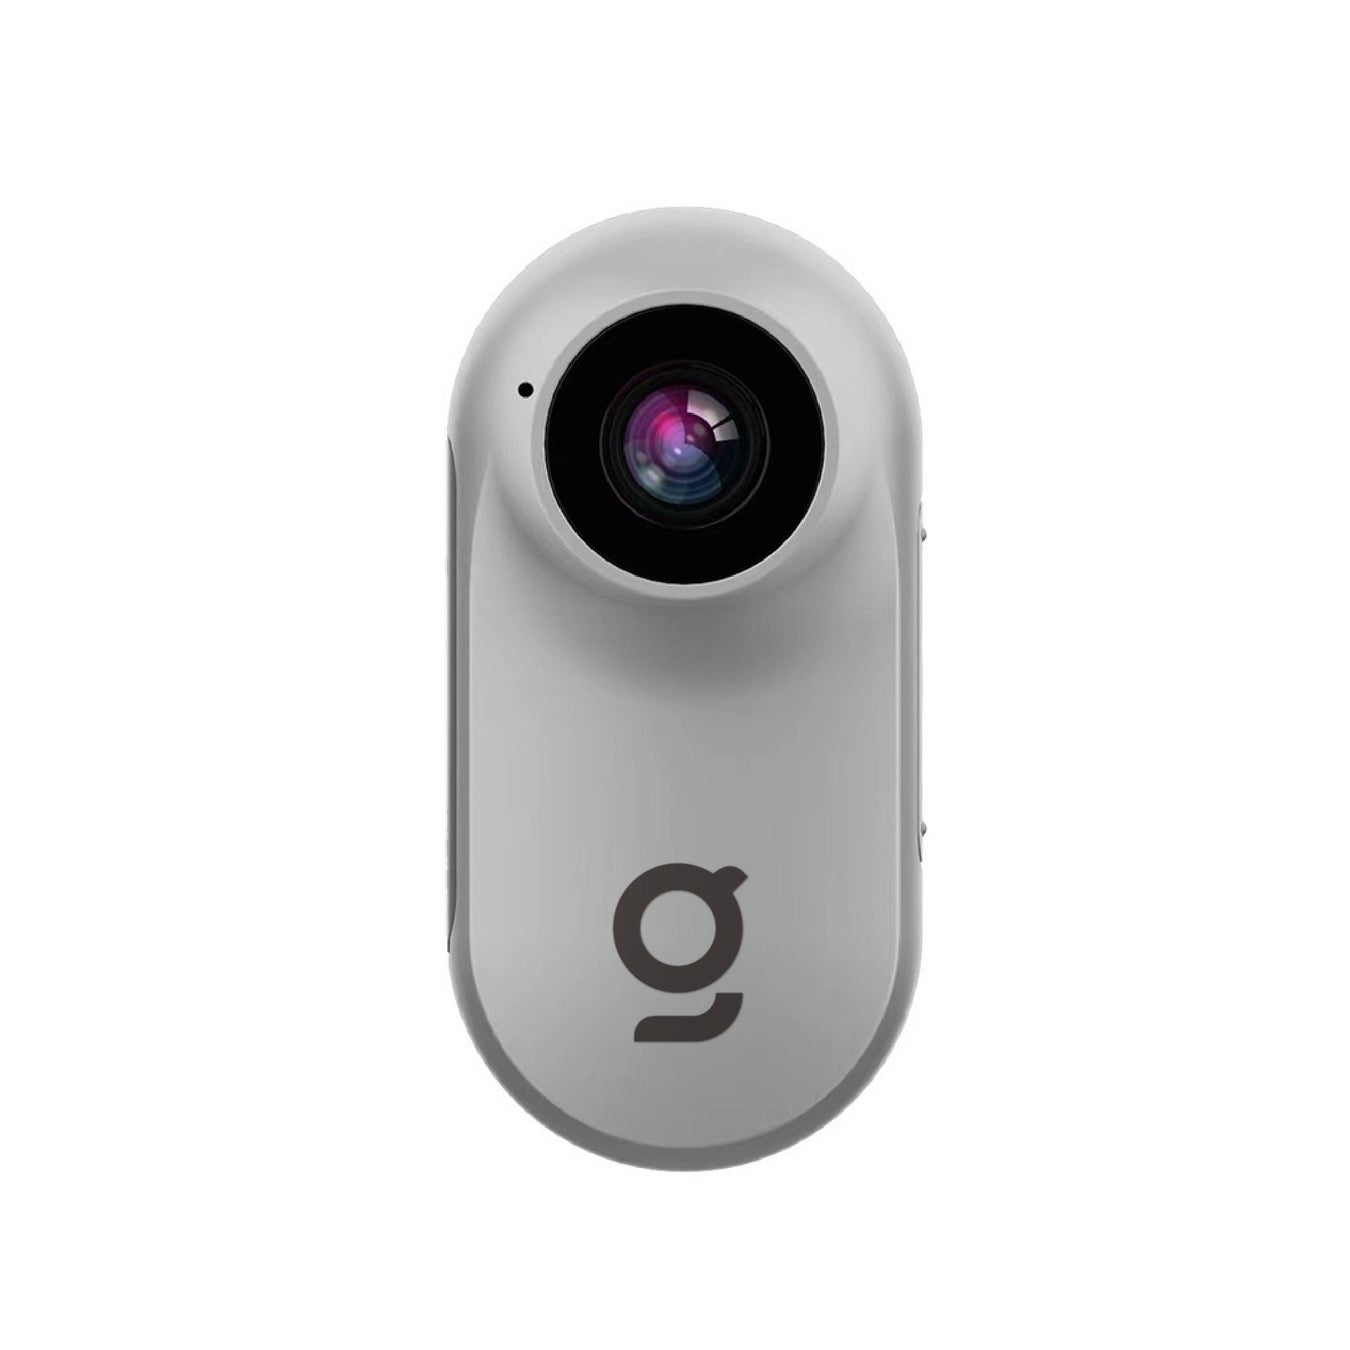 重さわずか22gの超小型アクションカメラ・手ぶれ補正機能搭載でスポーツ時の使用にもおすすめ！目で見たままの美しい景色を記録する「GeeInsta」をガジェットストア「MODERN g」で販売開始のサブ画像10